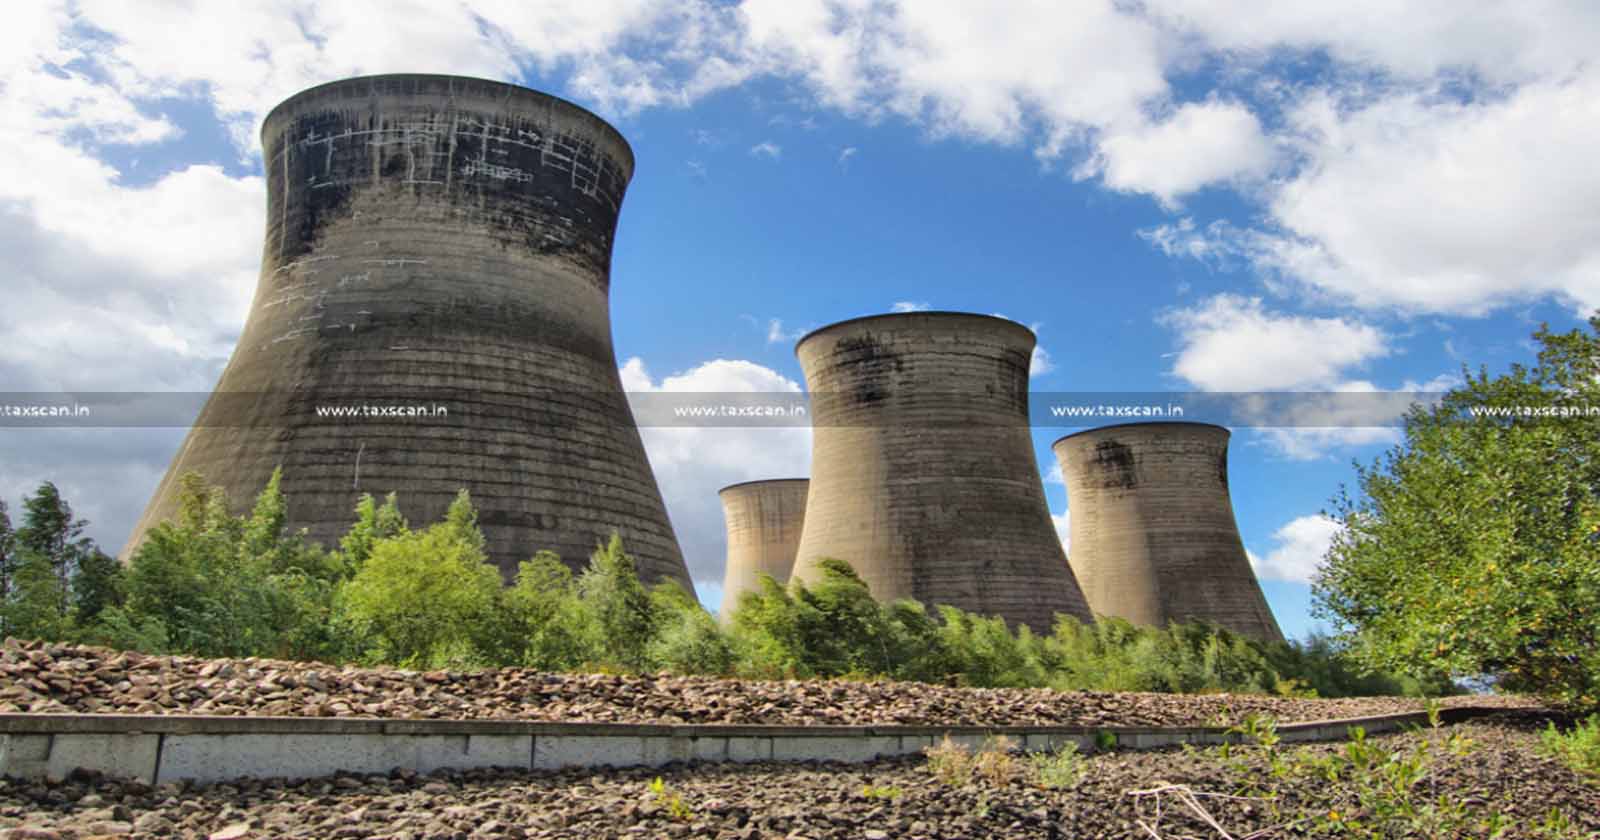 GST - Exemption - Cess - Coal - Rejects - Power - Plant - AAR - TAXSCAN